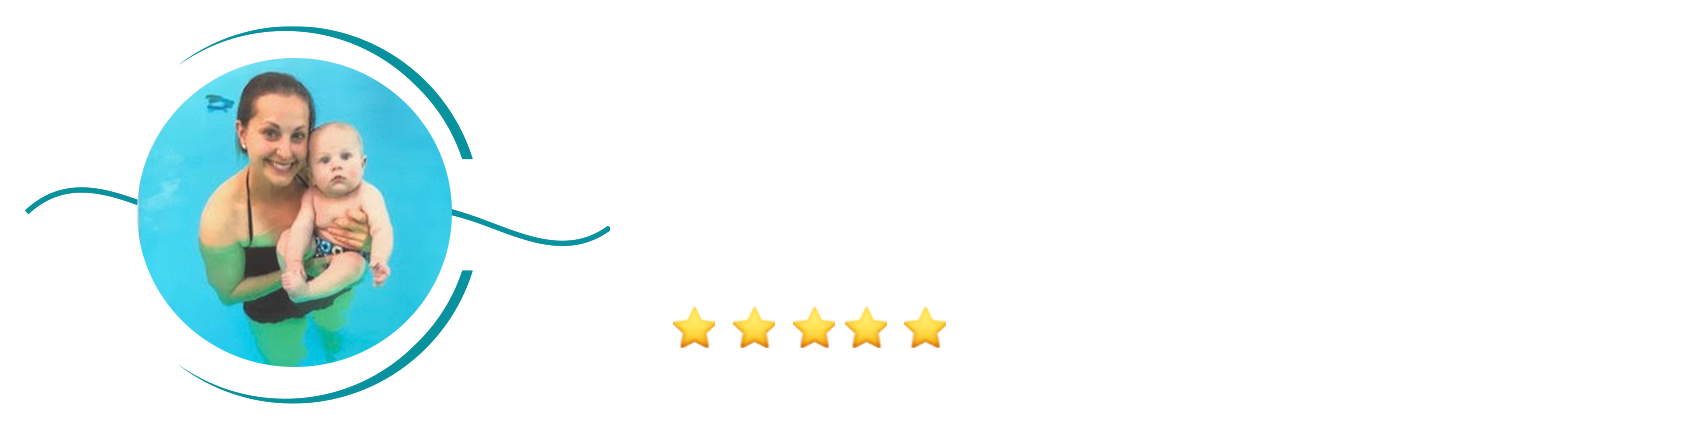 JulietWP.png